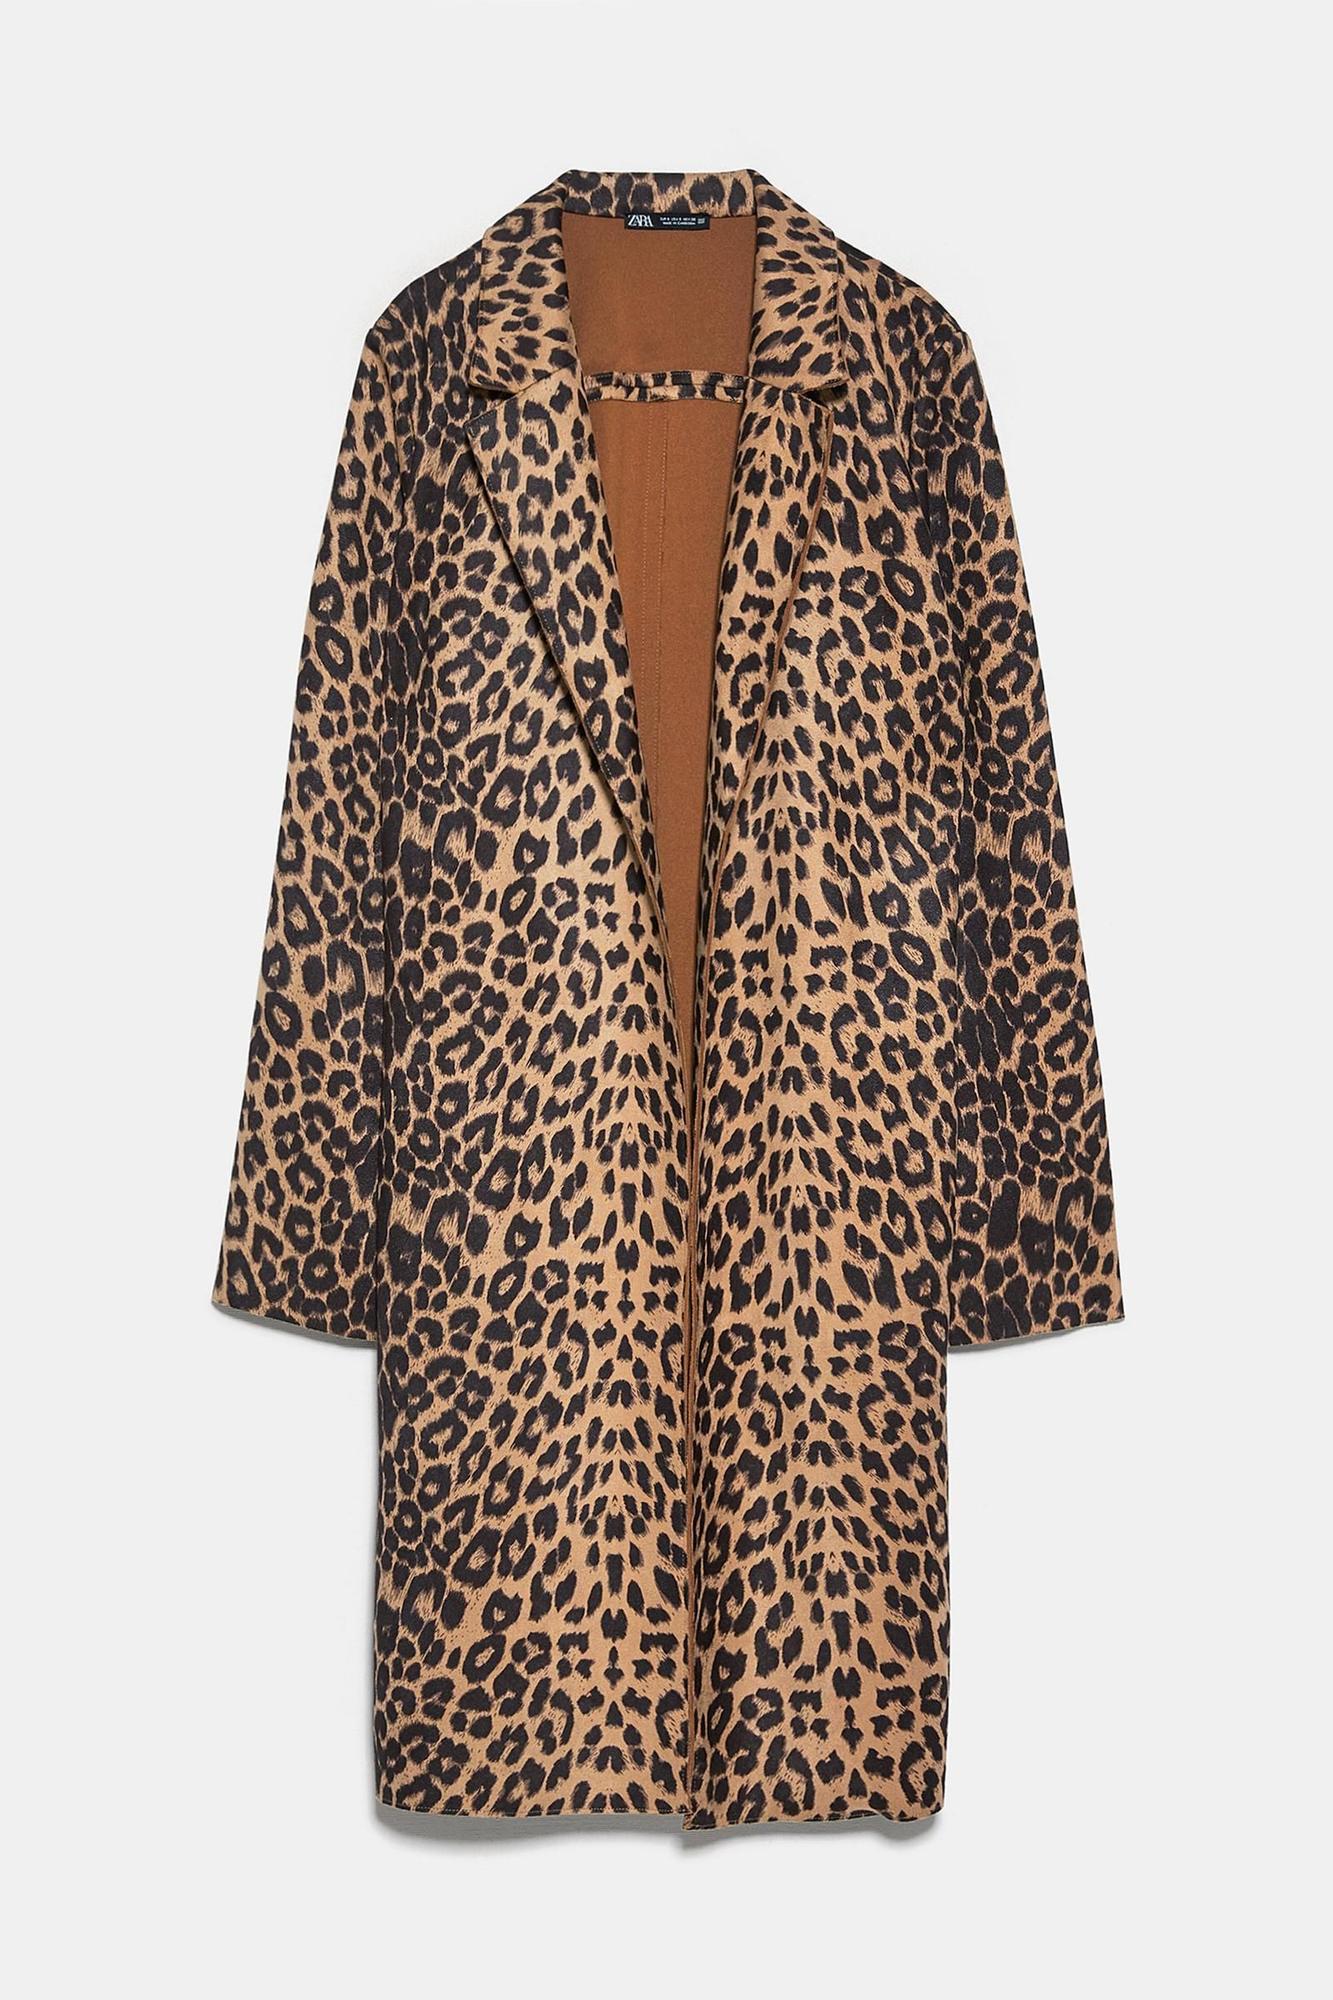 Rosie Huntington llevado un abrigo de estampado de leopardo que puedes encontrar en Zara - Woman